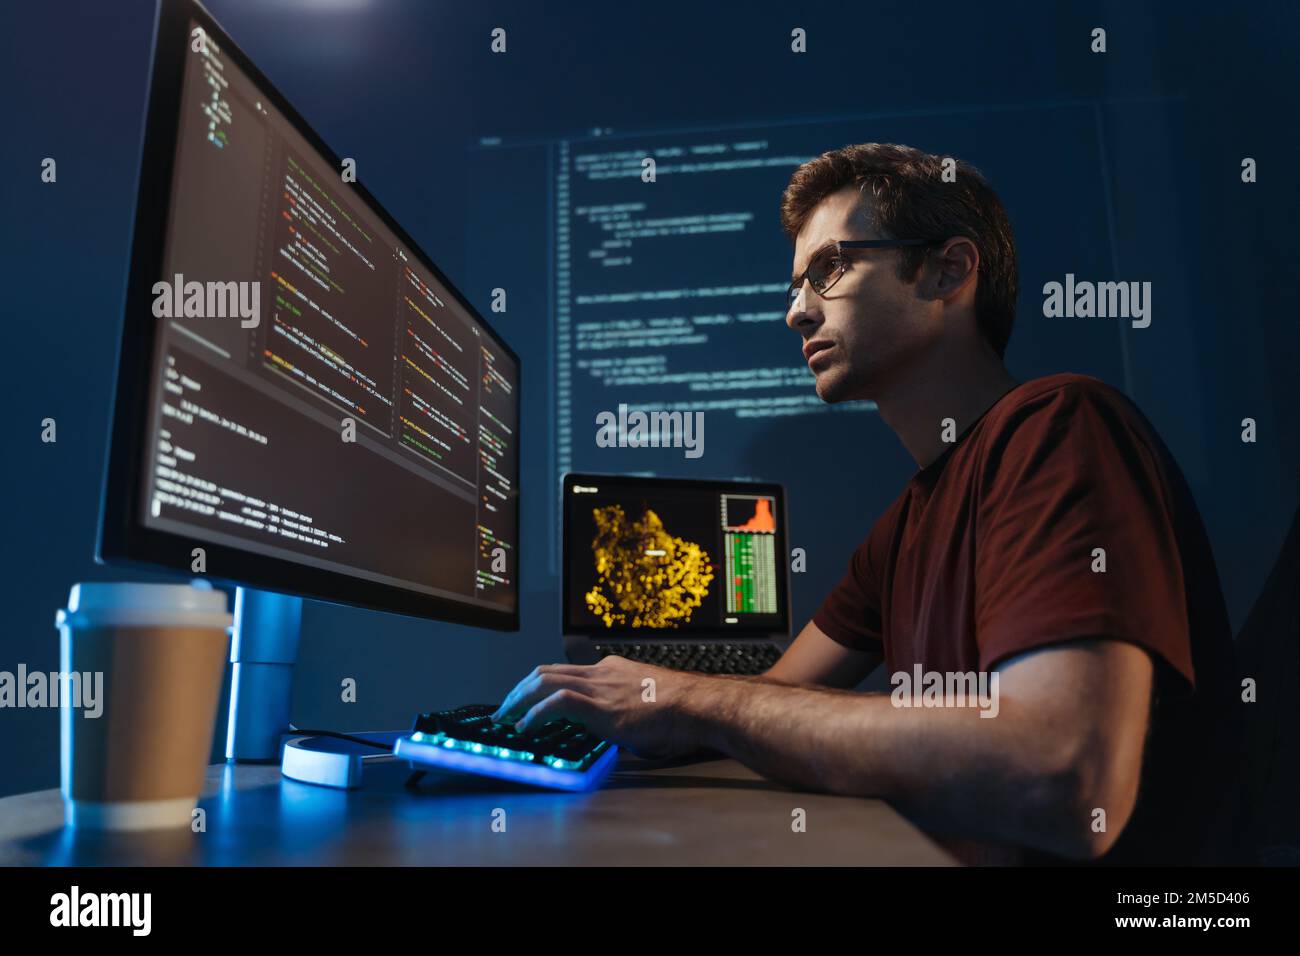 Immagine laterale di un moderno sviluppatore IT che utilizza il computer in ufficio di notte, lavora al software, codifica di una nuova applicazione, seduto di fronte al grande monitor del pc. Specialista in scienza dei dati al lavoro Foto Stock